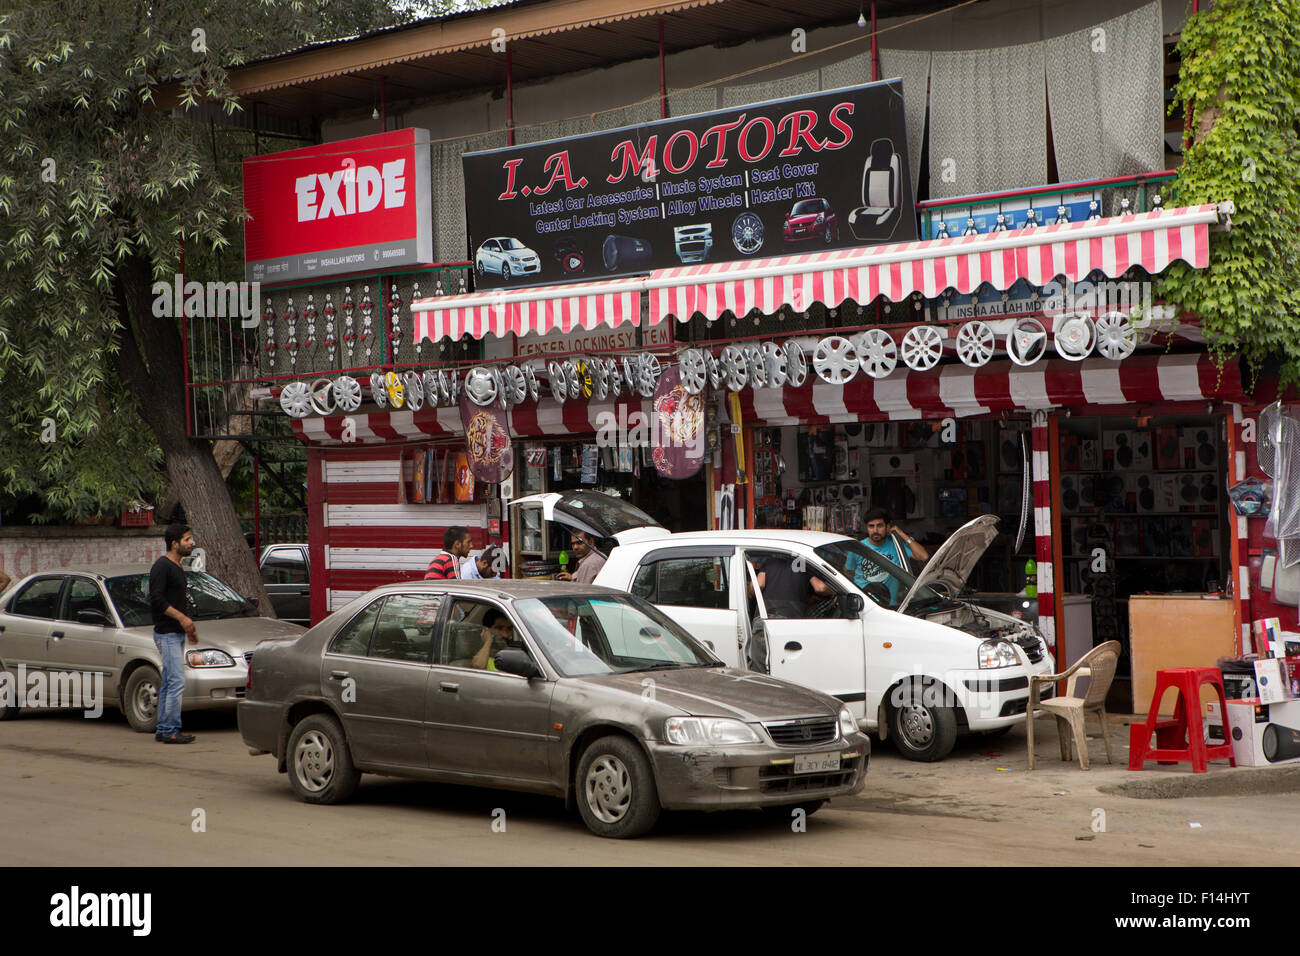 India, Jammu & Kashmir, Srinagar, Hazratbal, la propiedad de automóviles, partes de automóviles shop Foto de stock